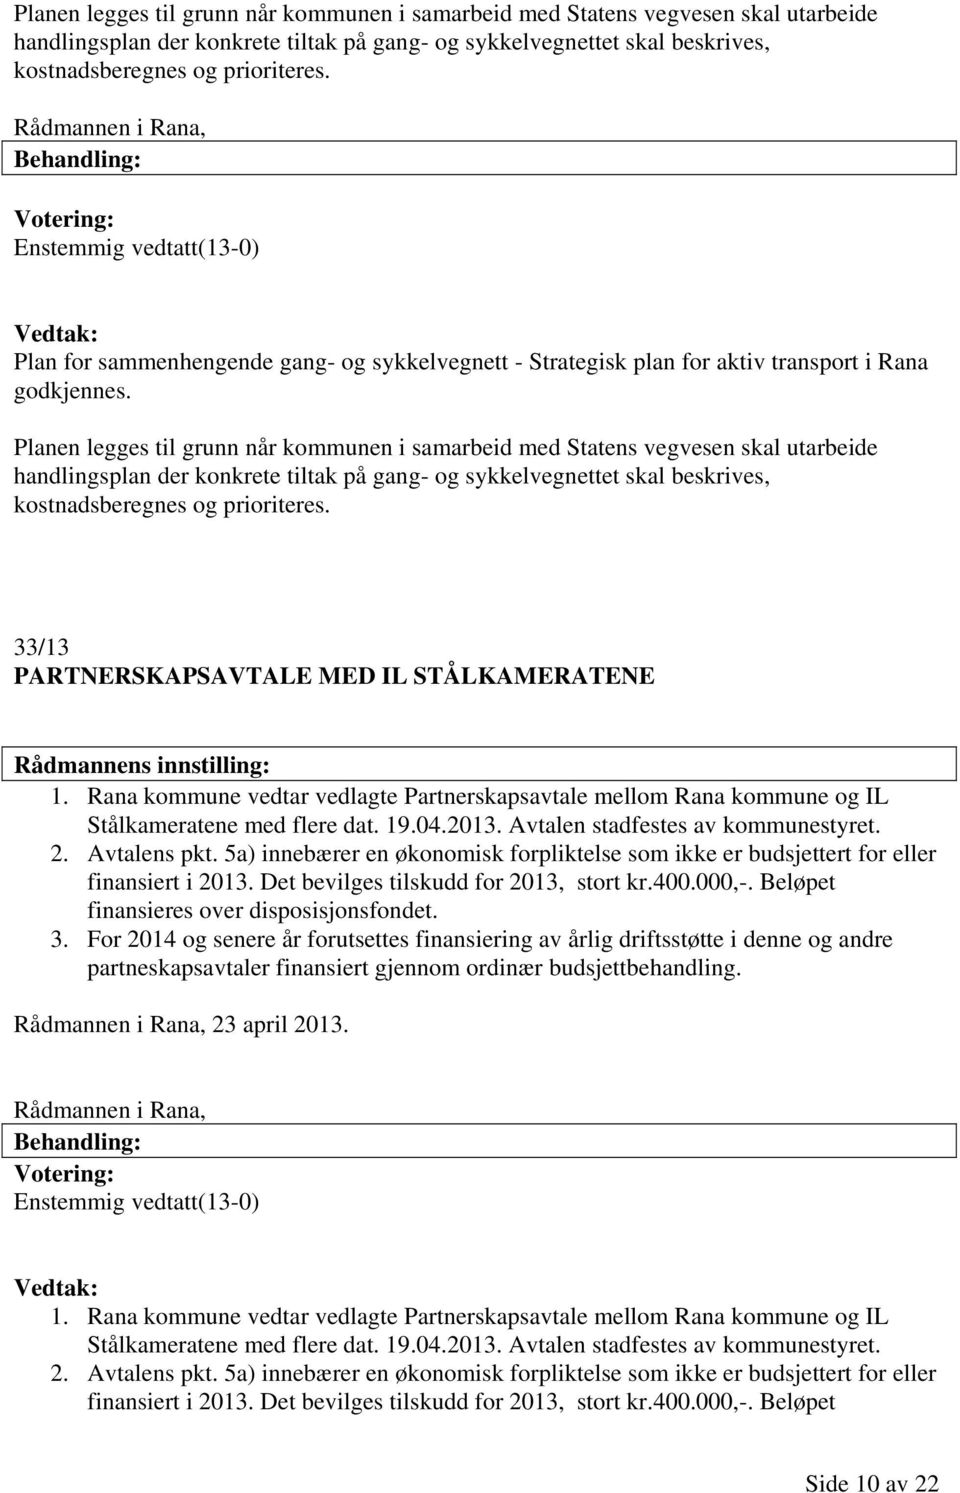 Rana kommune vedtar vedlagte Partnerskapsavtale mellom Rana kommune og IL Stålkameratene med flere dat. 19.04.2013. Avtalen stadfestes av kommunestyret. 2. Avtalens pkt.